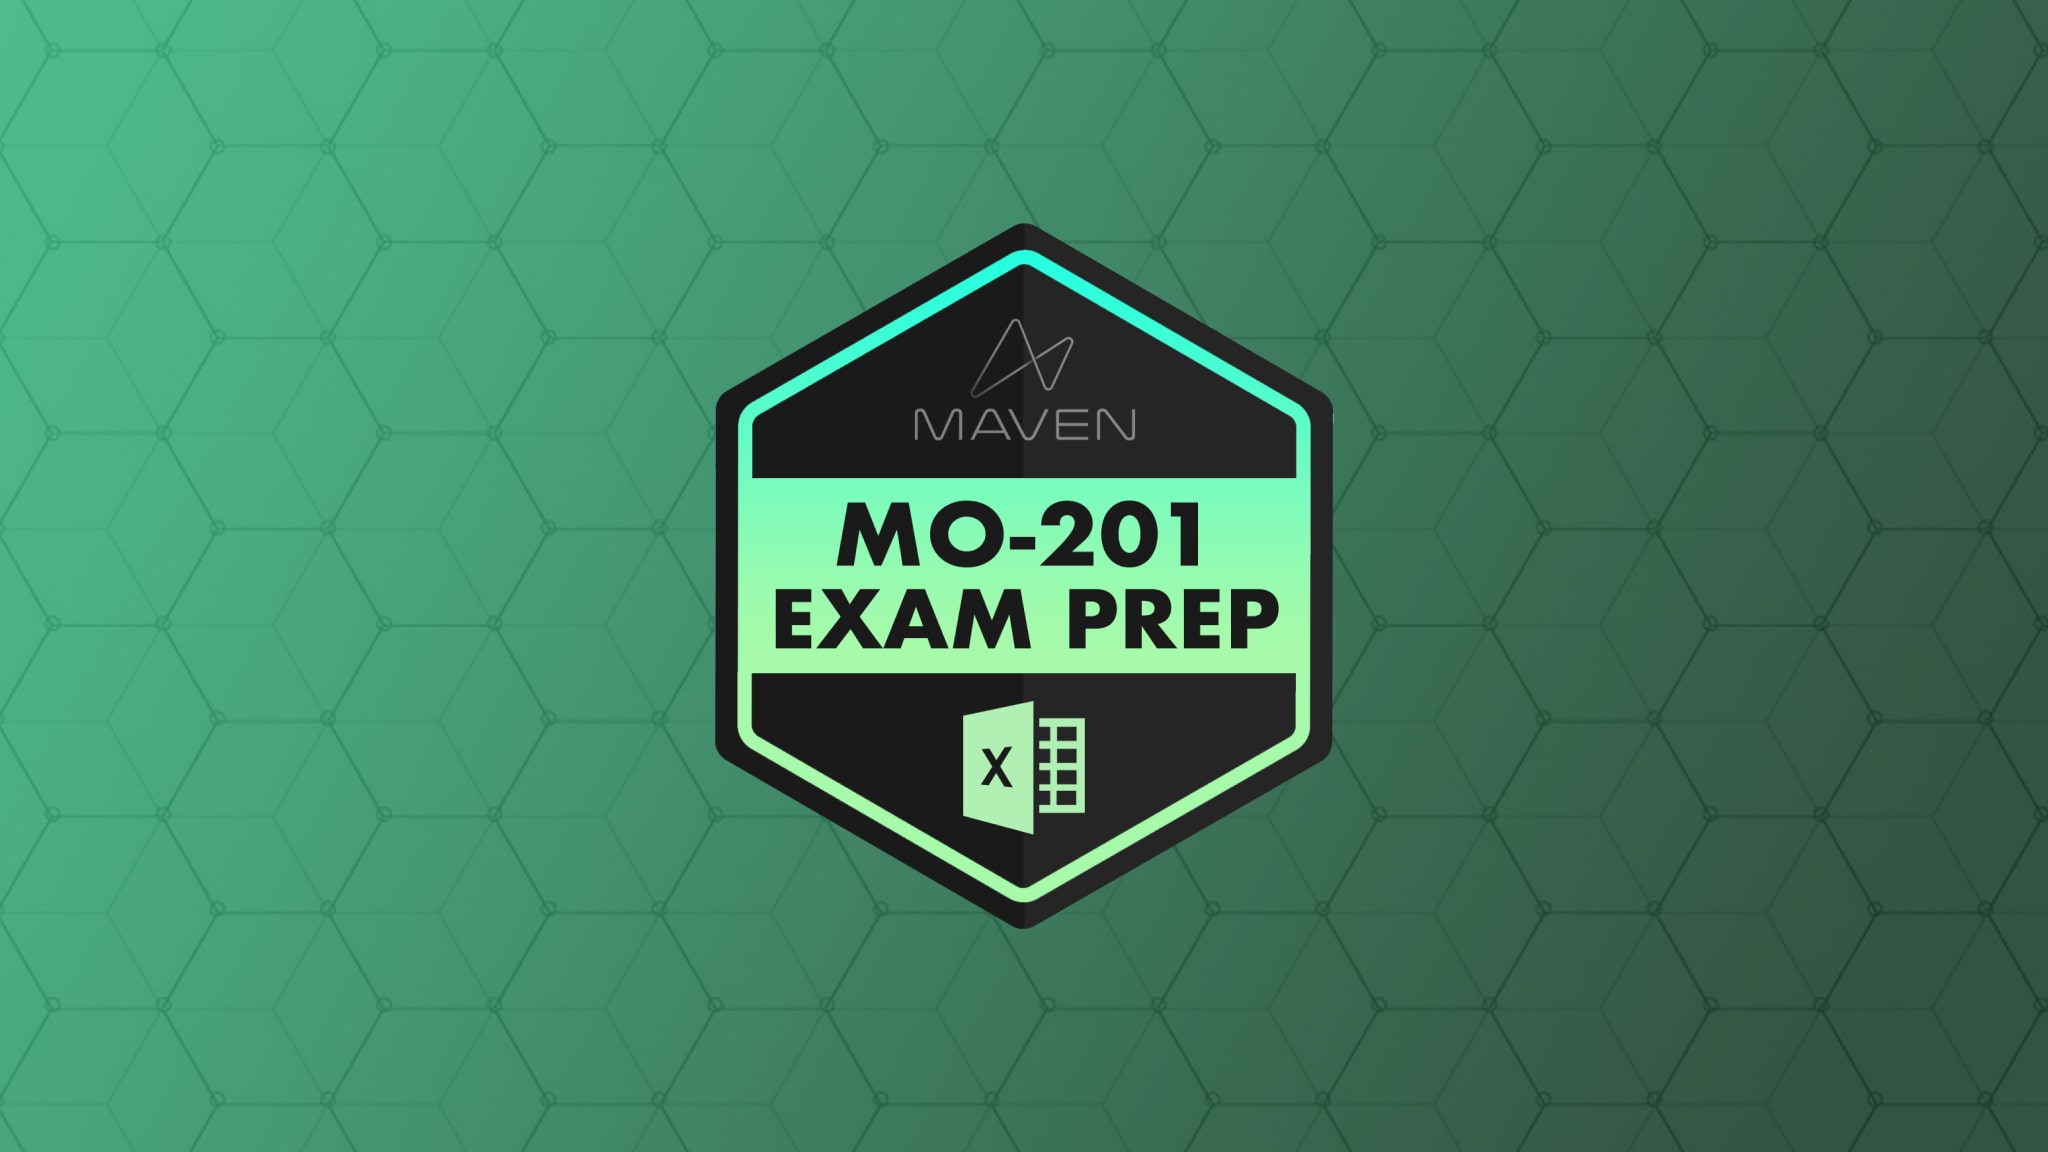 Excel MO-201 Exam Prep